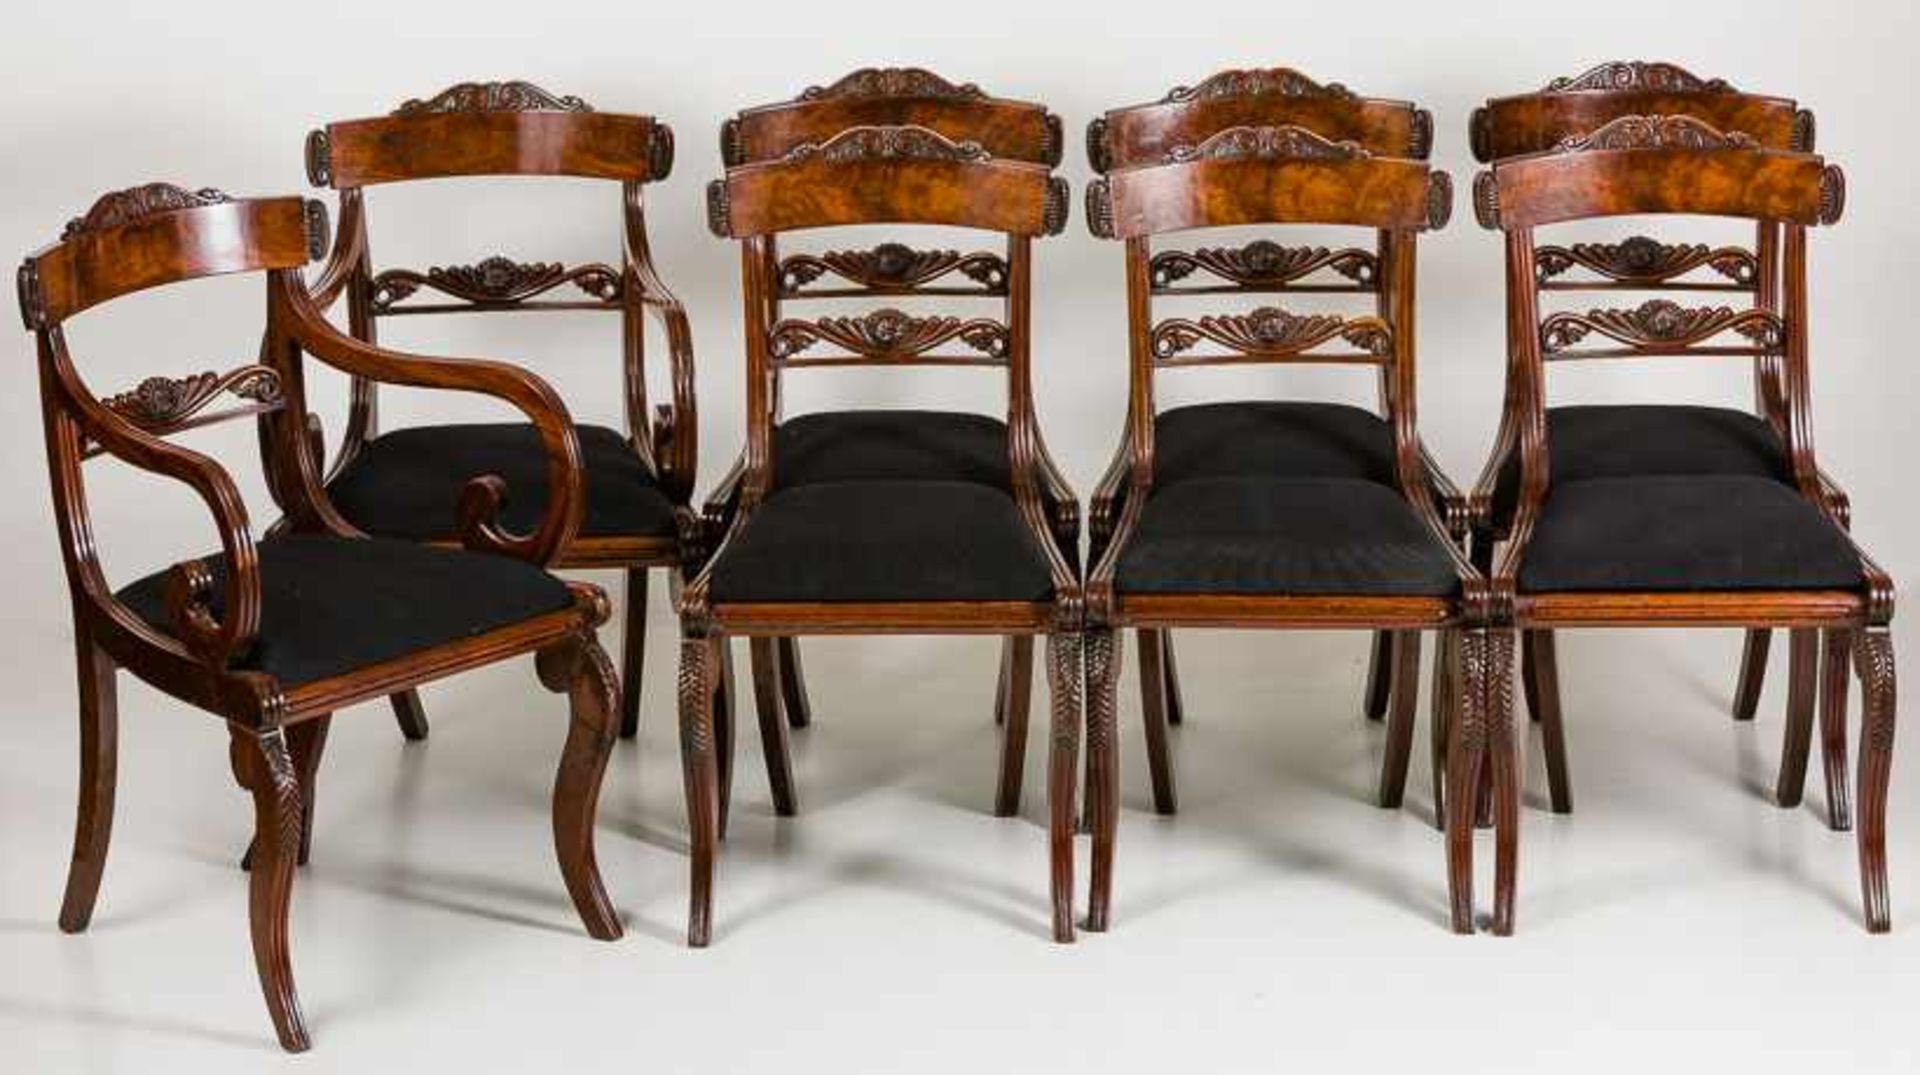 Sechs Stühle und zwei ArmlehnstühleBaltikum, um 1830Mahagoni. Ausgeschnittene, gerippte Beine und